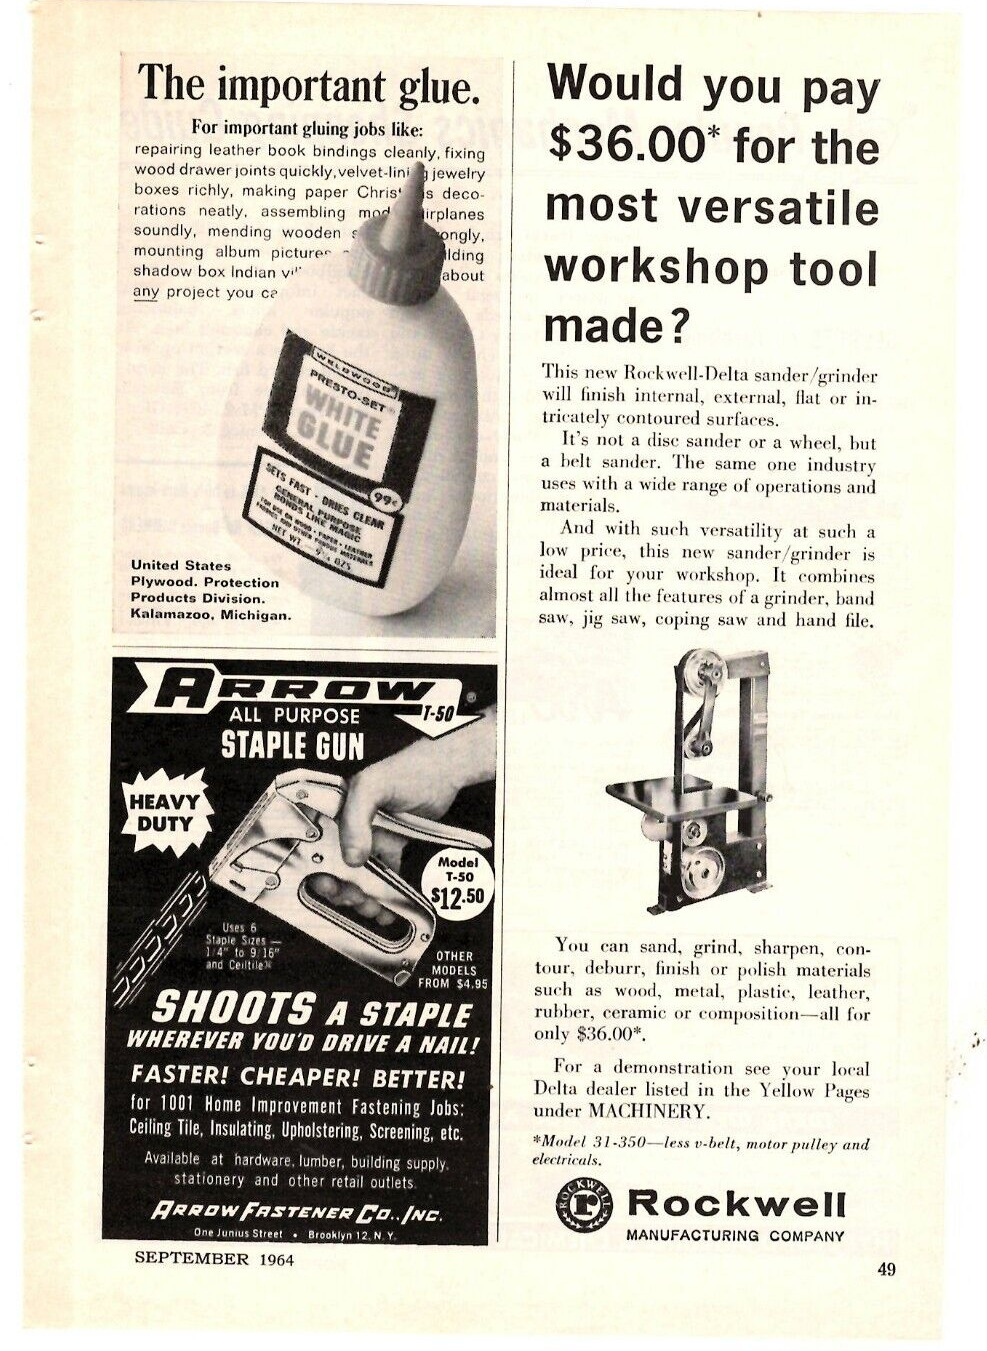 1964 Print Ad  Rockwell Manufacturing  Delta Workshop Tool Sand Grind Sharpen